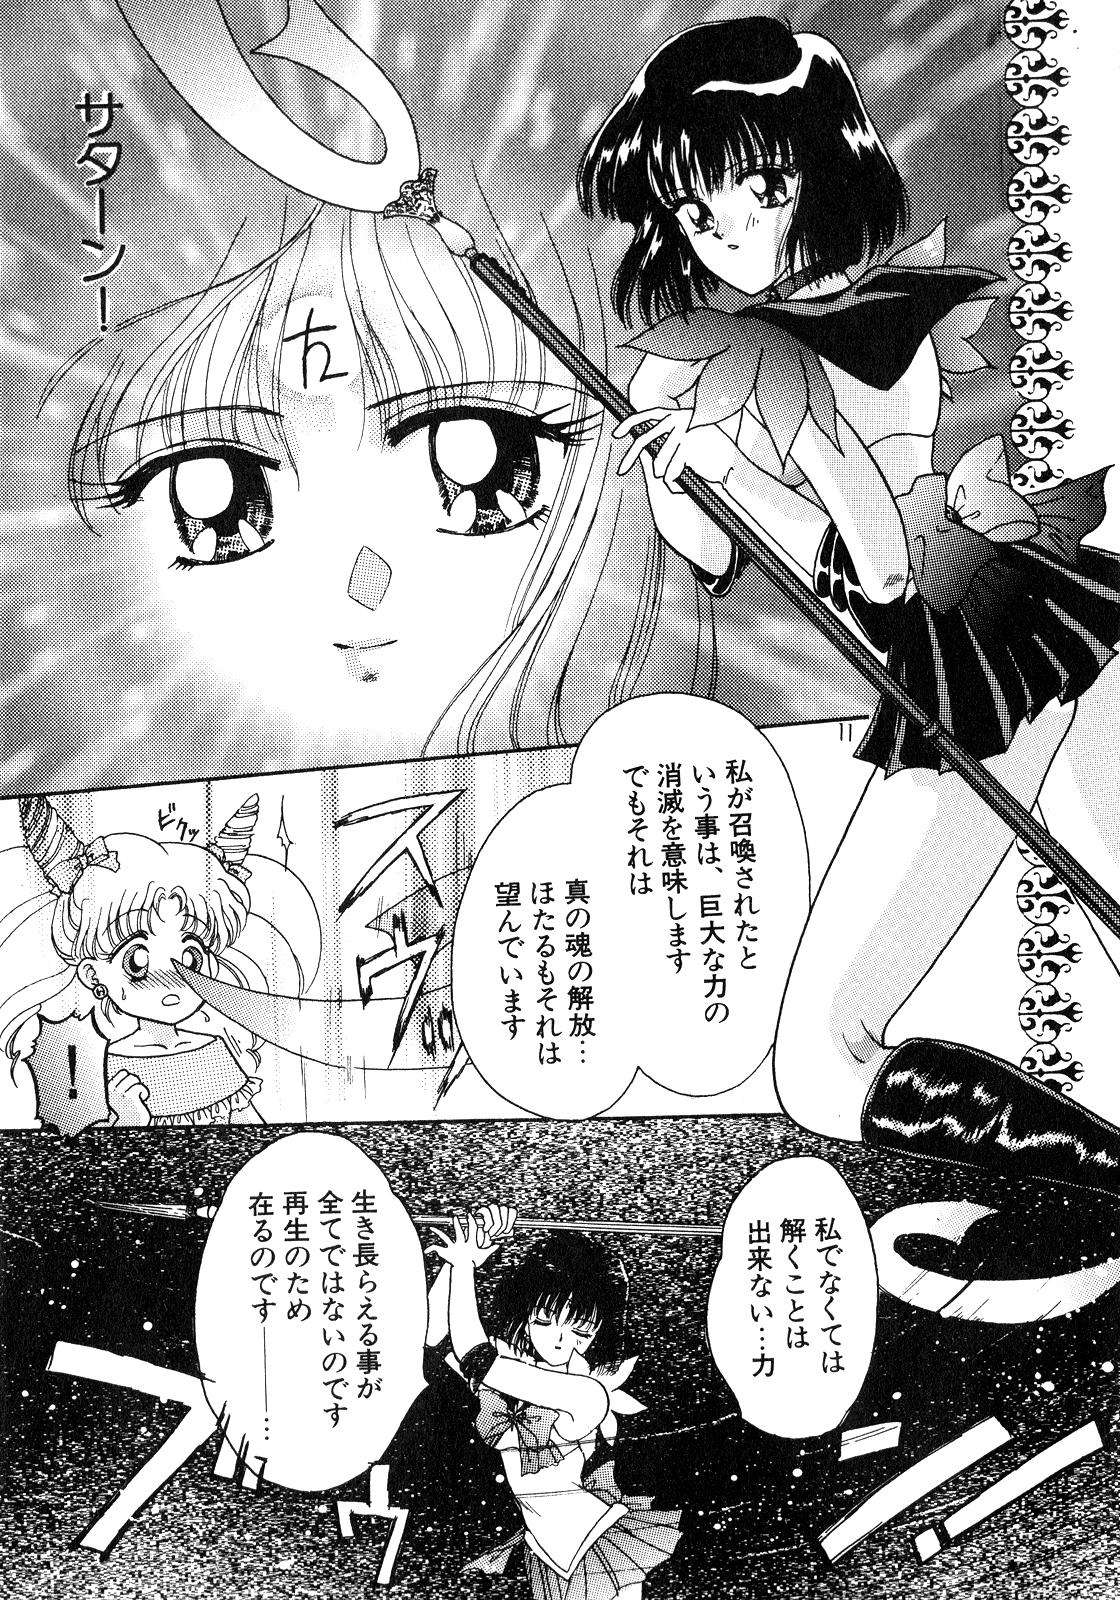 Big Black Dick Lunatic Party 8 - Sailor moon Coed - Page 10